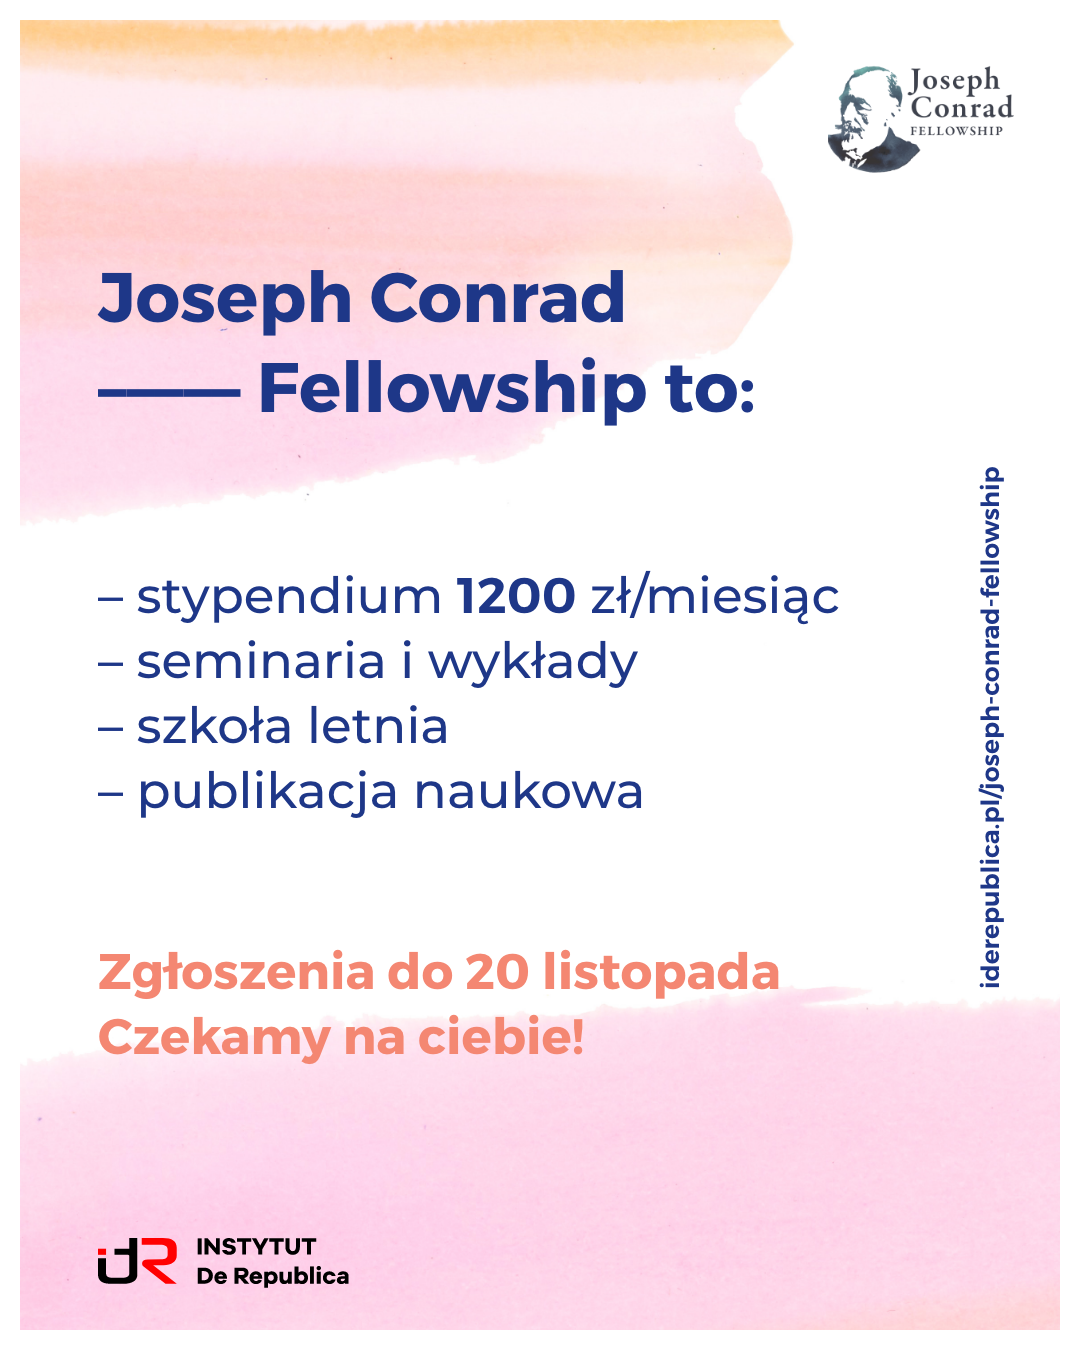 Joseph Conrad Fellowship to 2